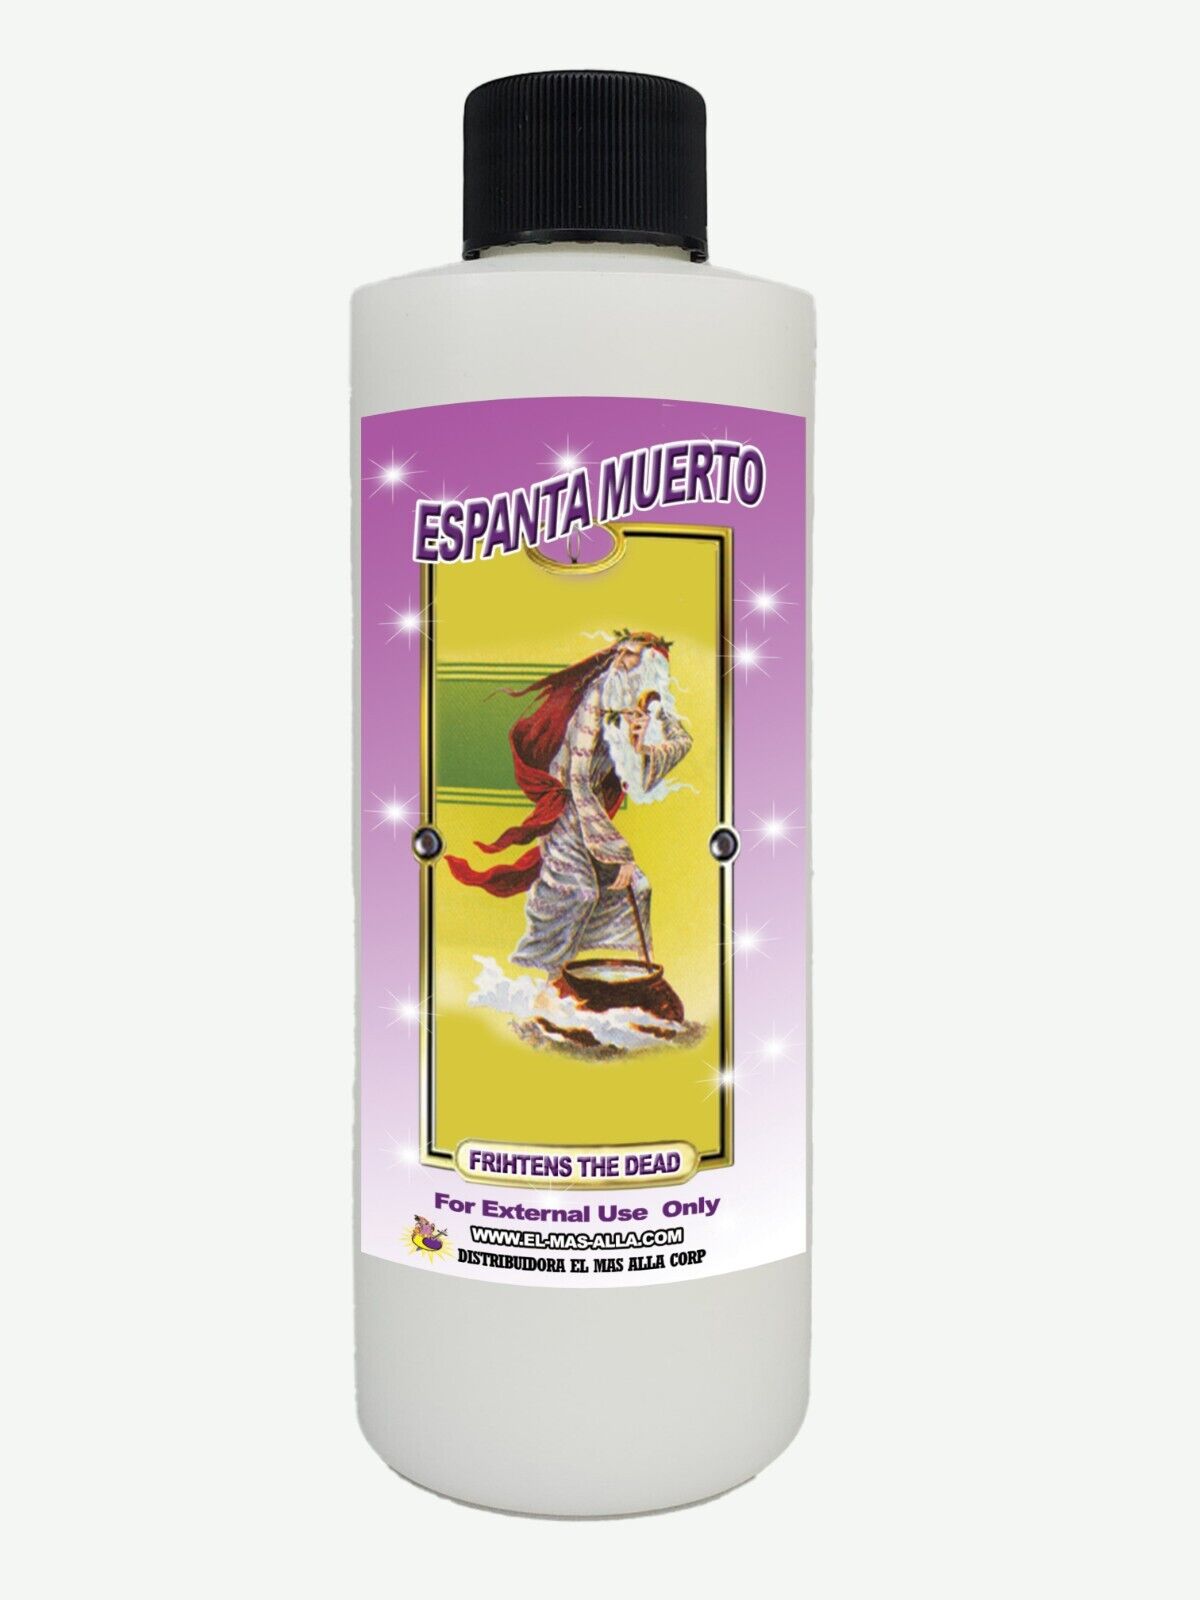 Baño - Limpia Y Despojo Espanta Muerto - Ritual Bath Get Rid Bad Spirits